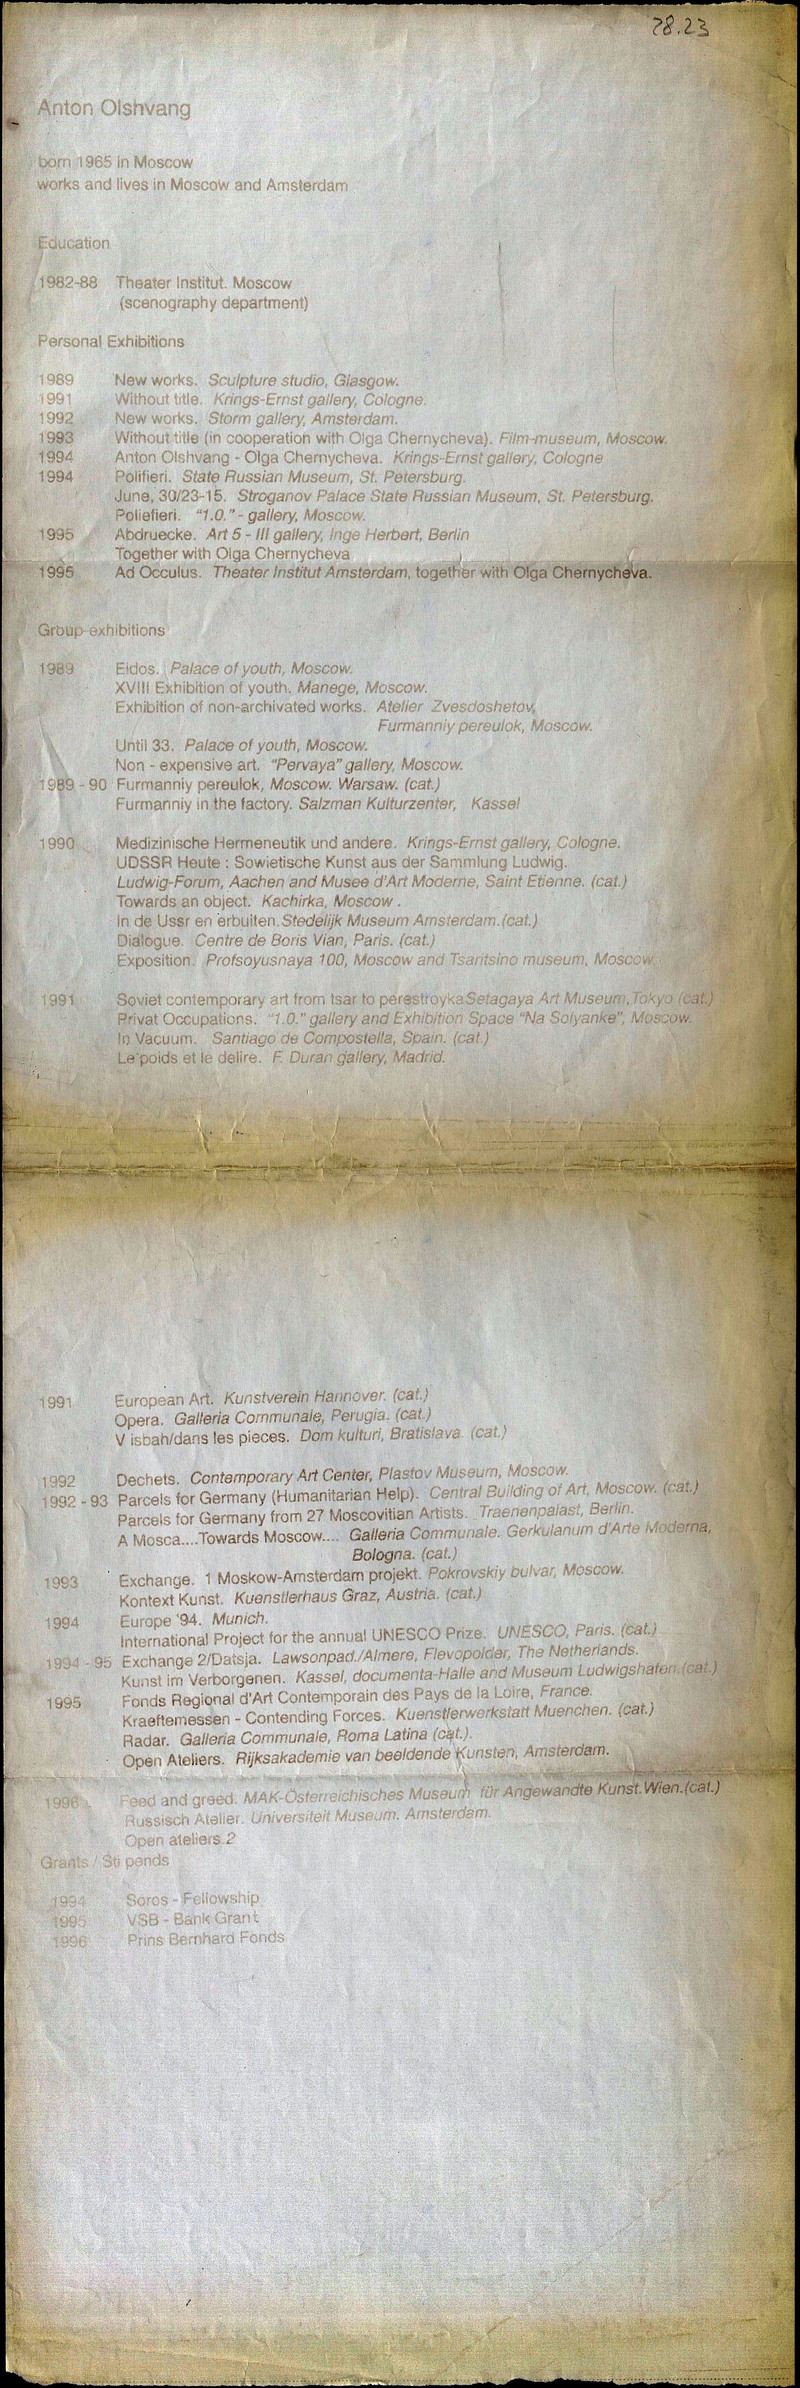 Краткая биография и список выставок Антона Ольшванга для III Цетинской биеннале